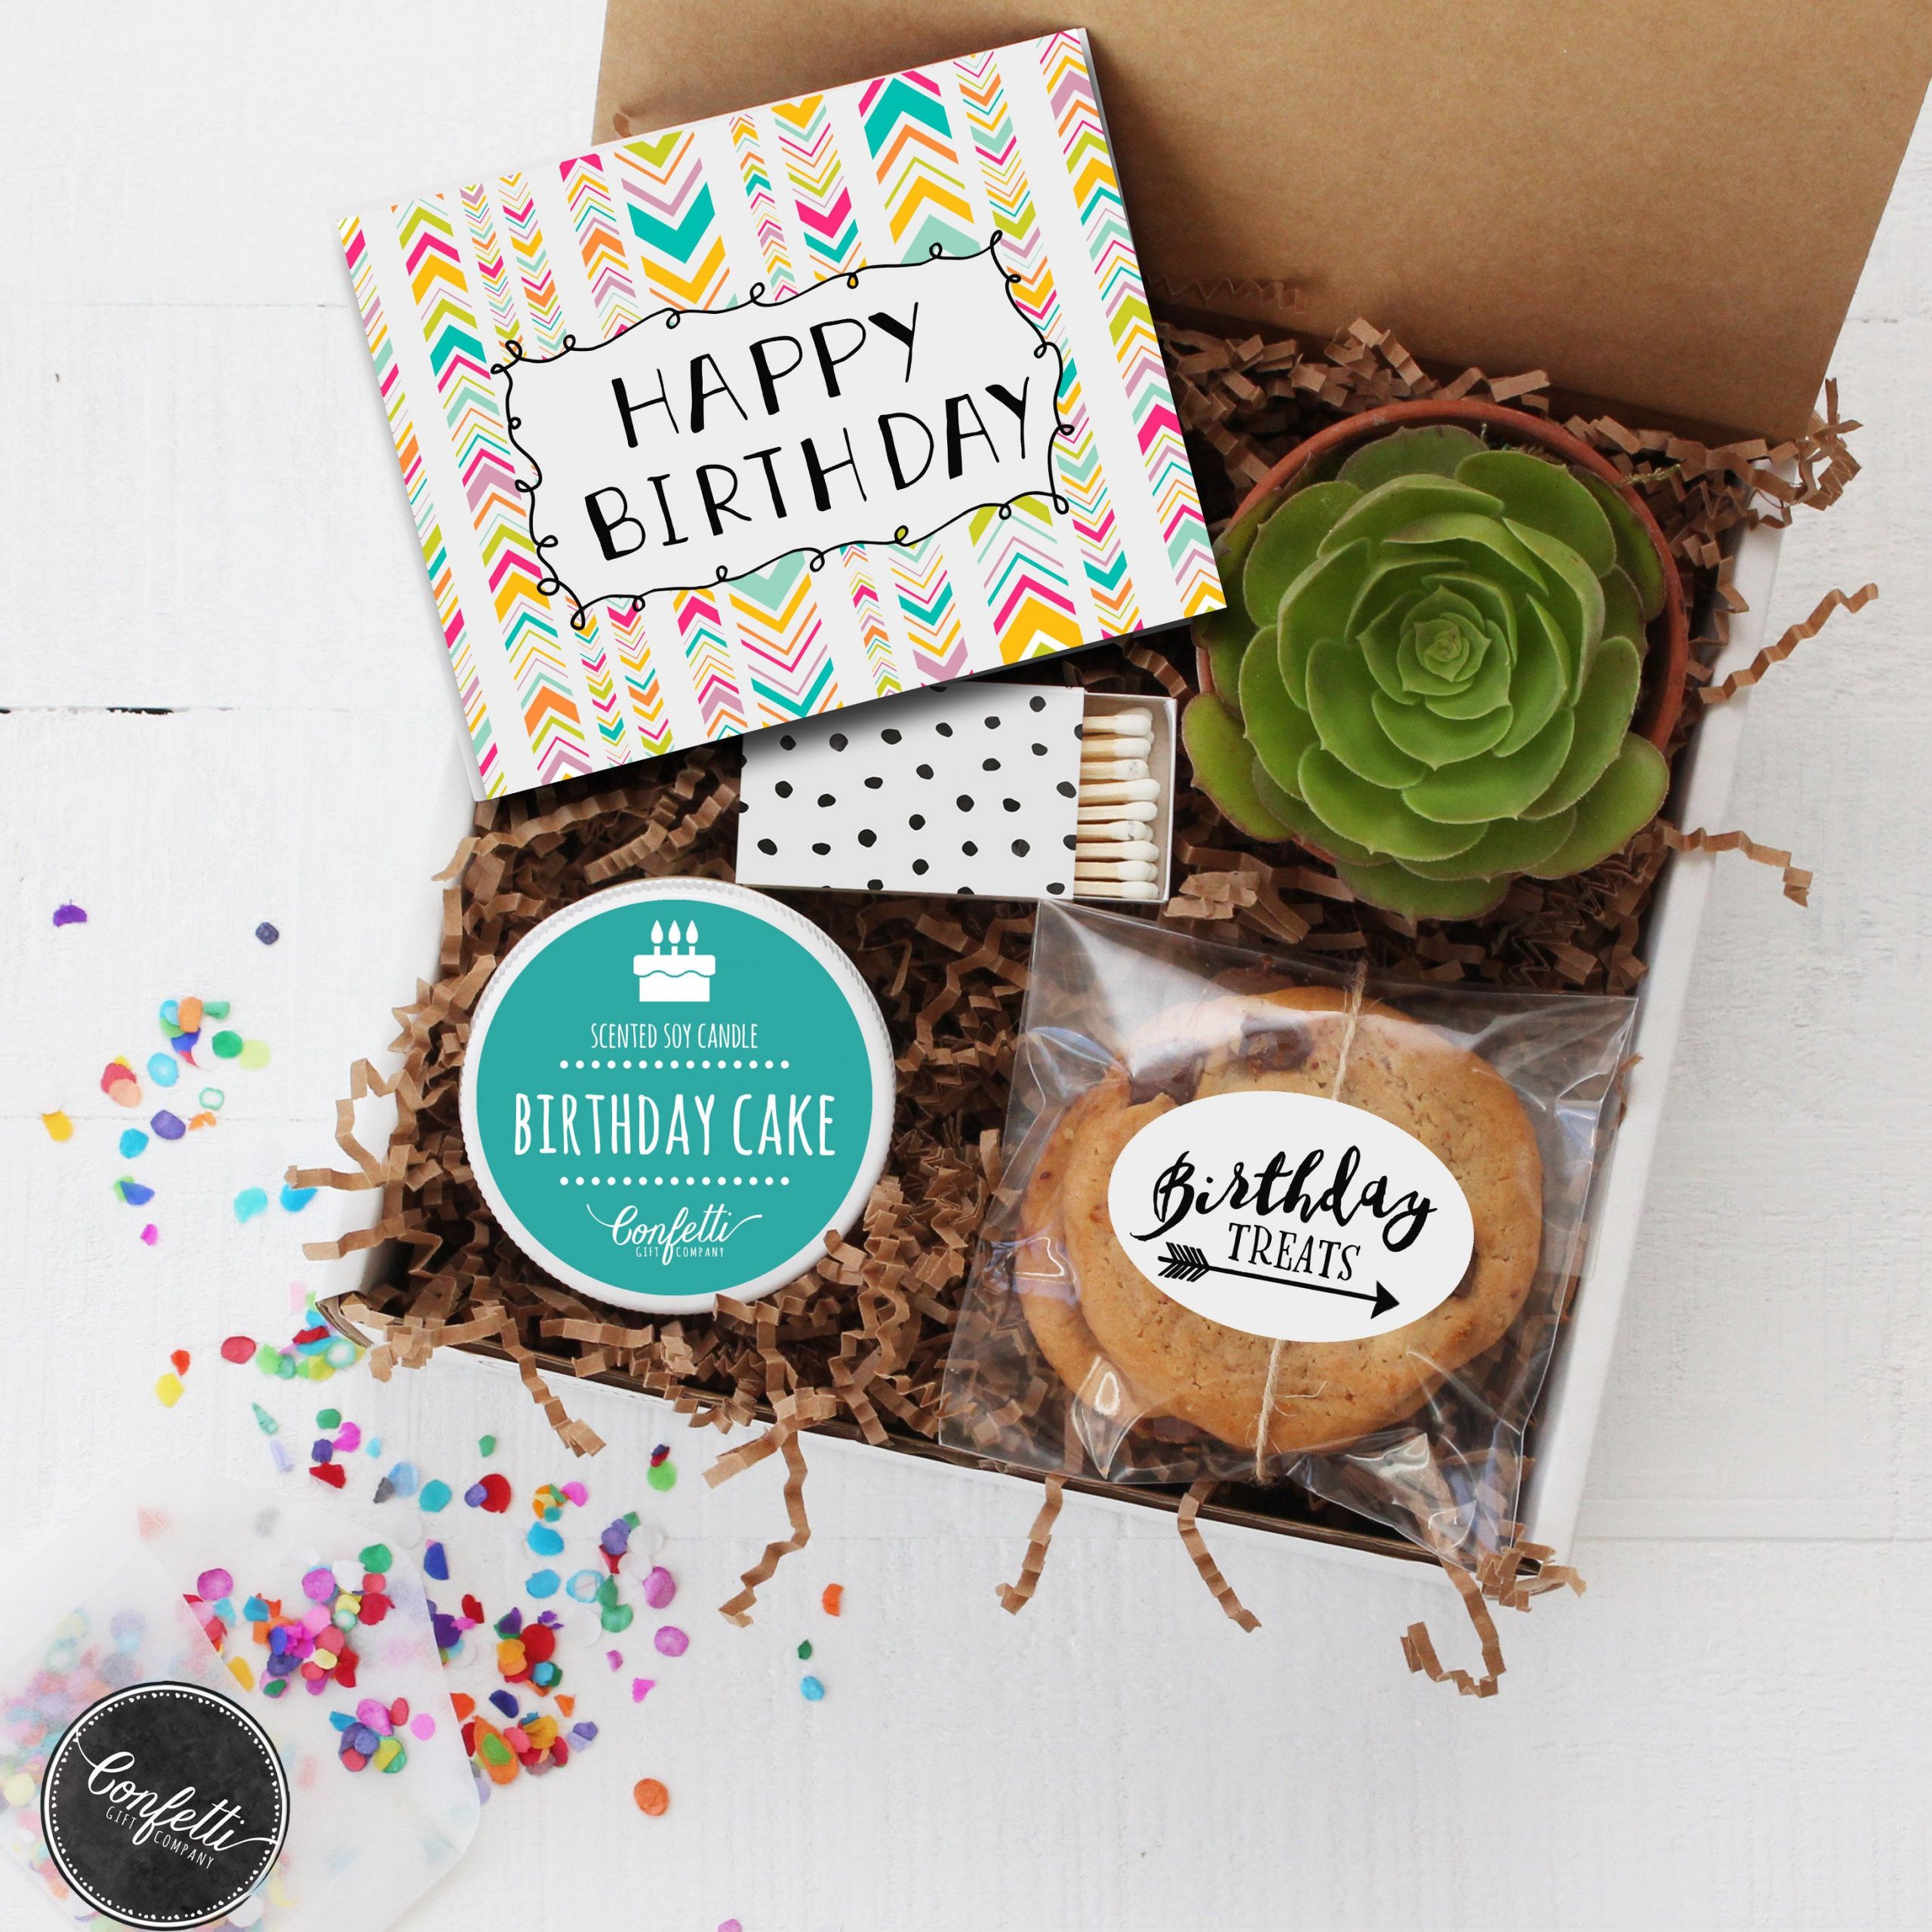 Birthday Box Gift Ideas
 Happy Birthday Gift Box Send a Birthday Gift Birthday in a